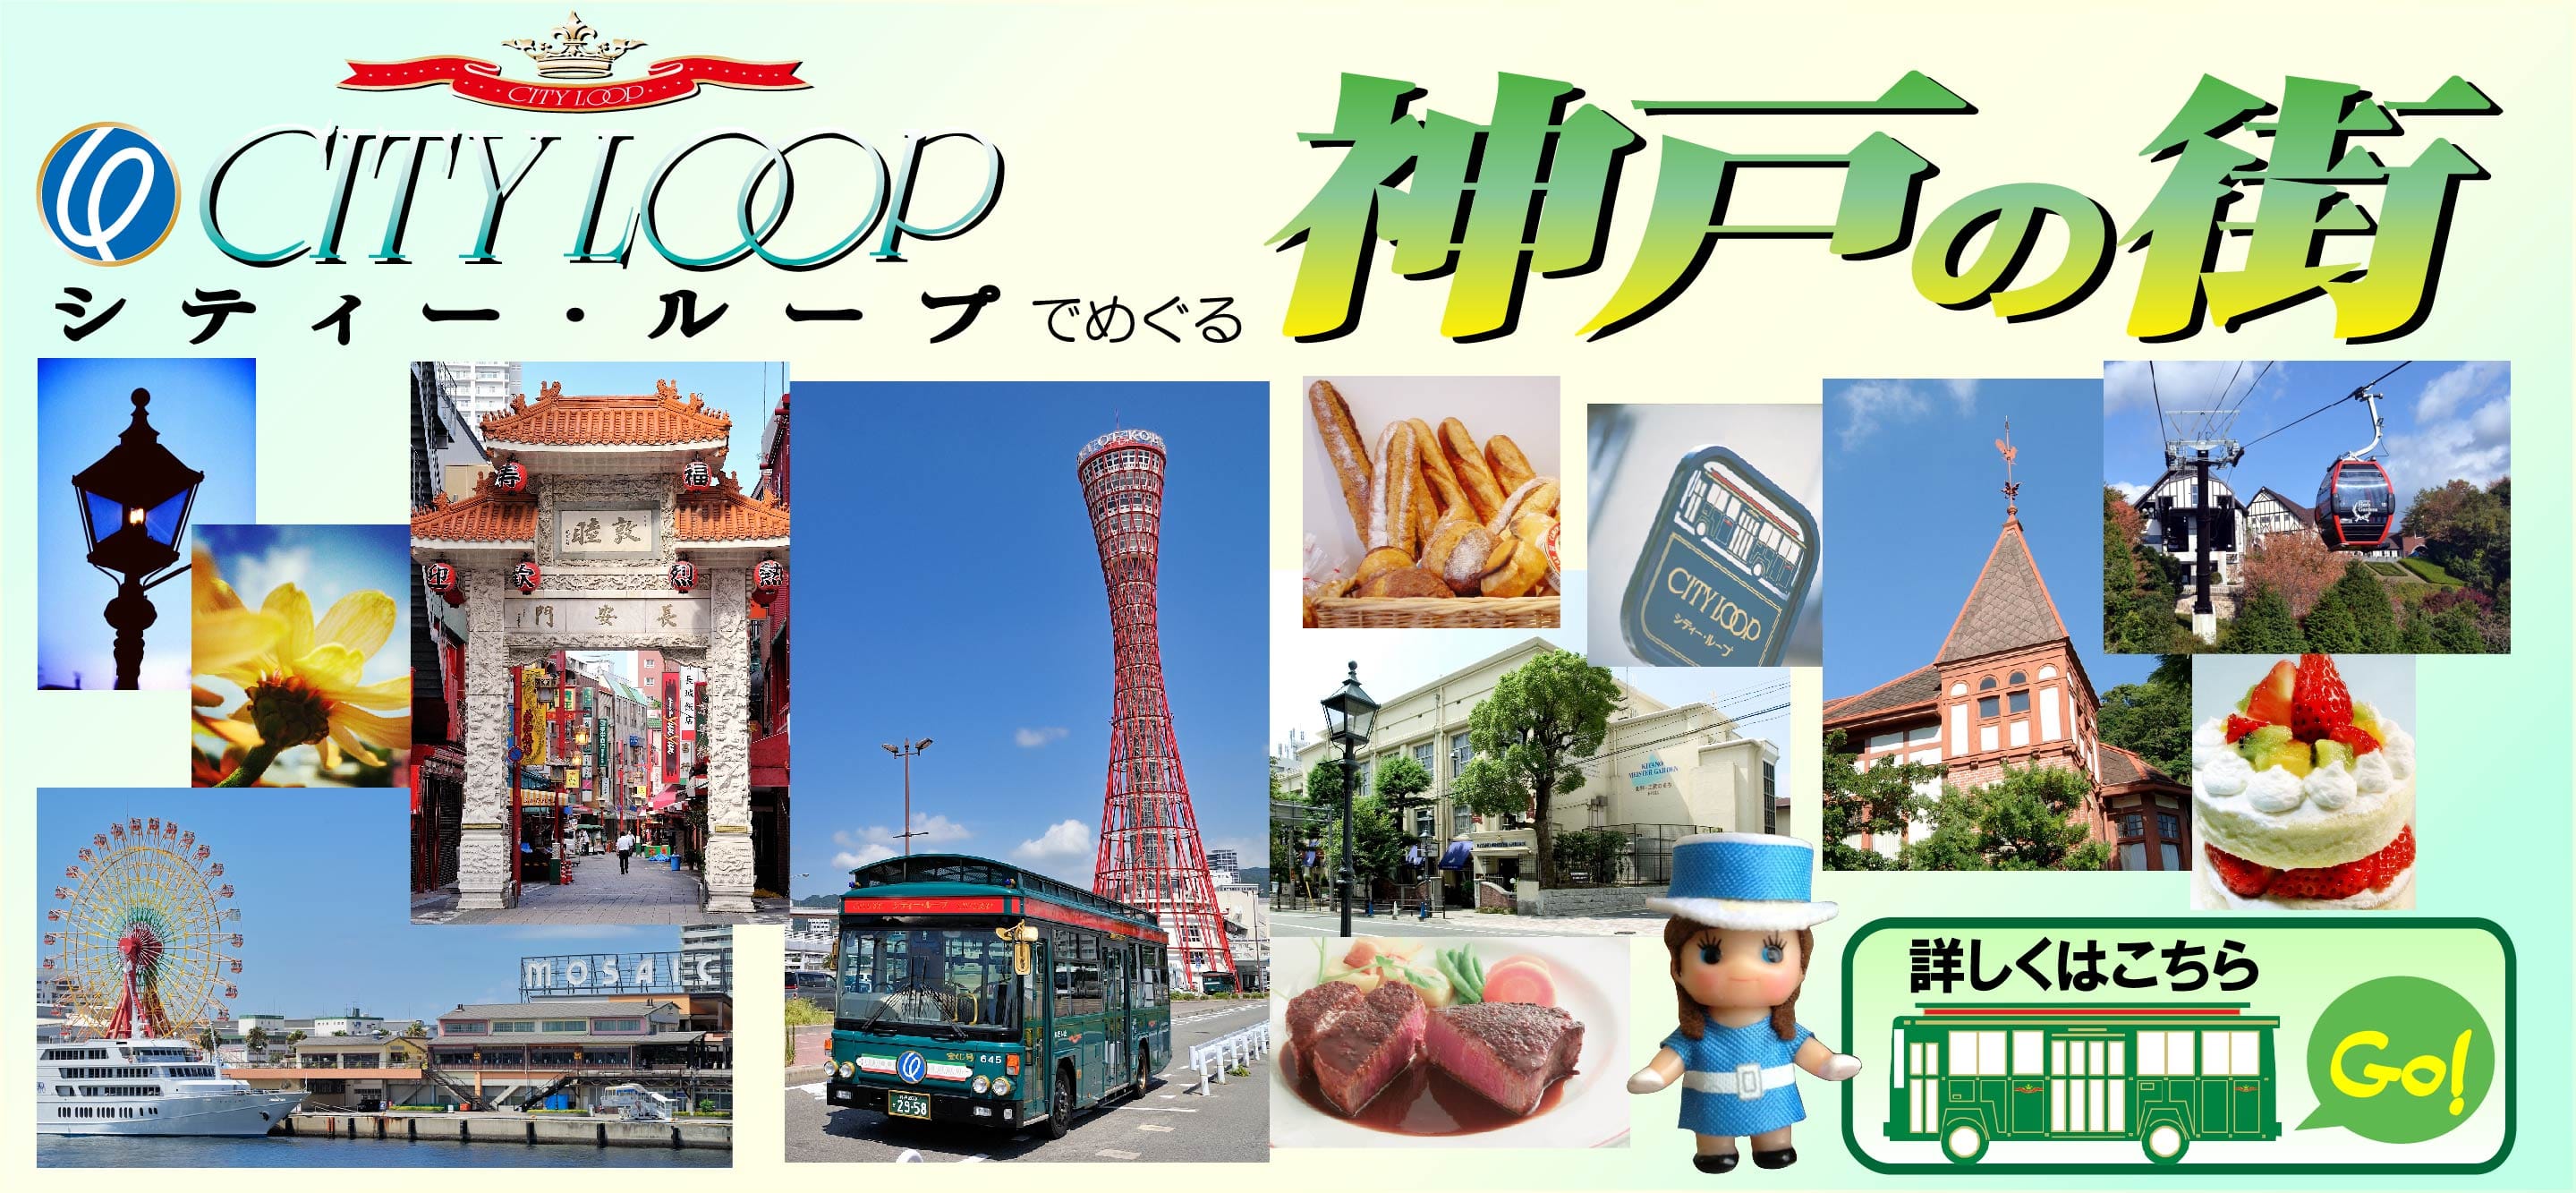 神戶市區景點交通｜環城巴士（City Loop Bus）、環城巴士一日券